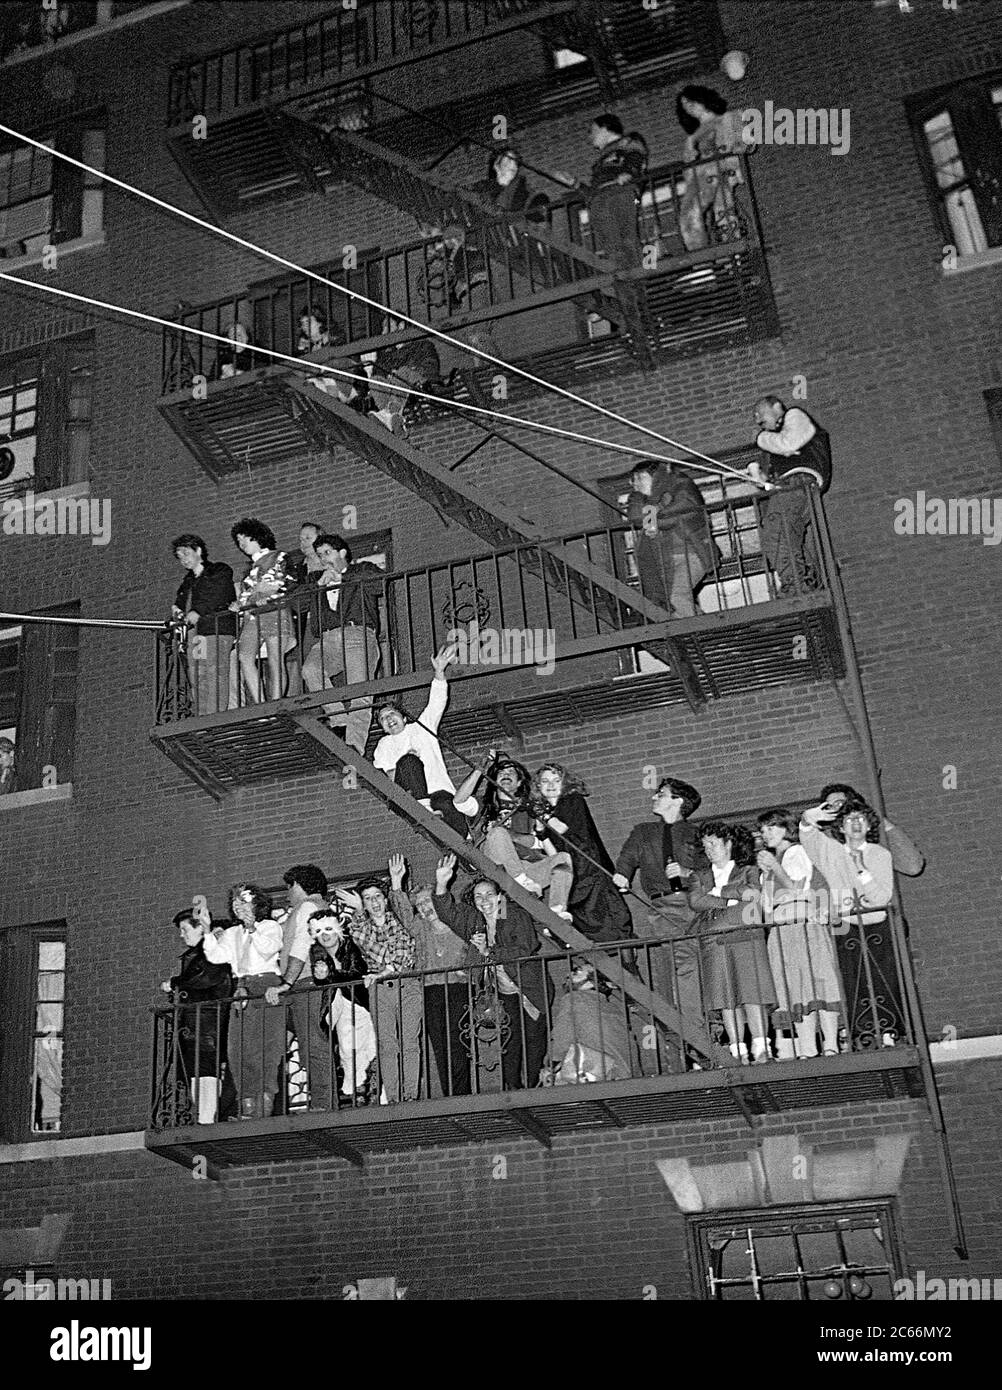 Le persone in fuga fuoco al Greenwich Village Halloween Parade, New York City, Stati Uniti negli anni '80 fotografato con film in bianco e nero di notte. Foto Stock